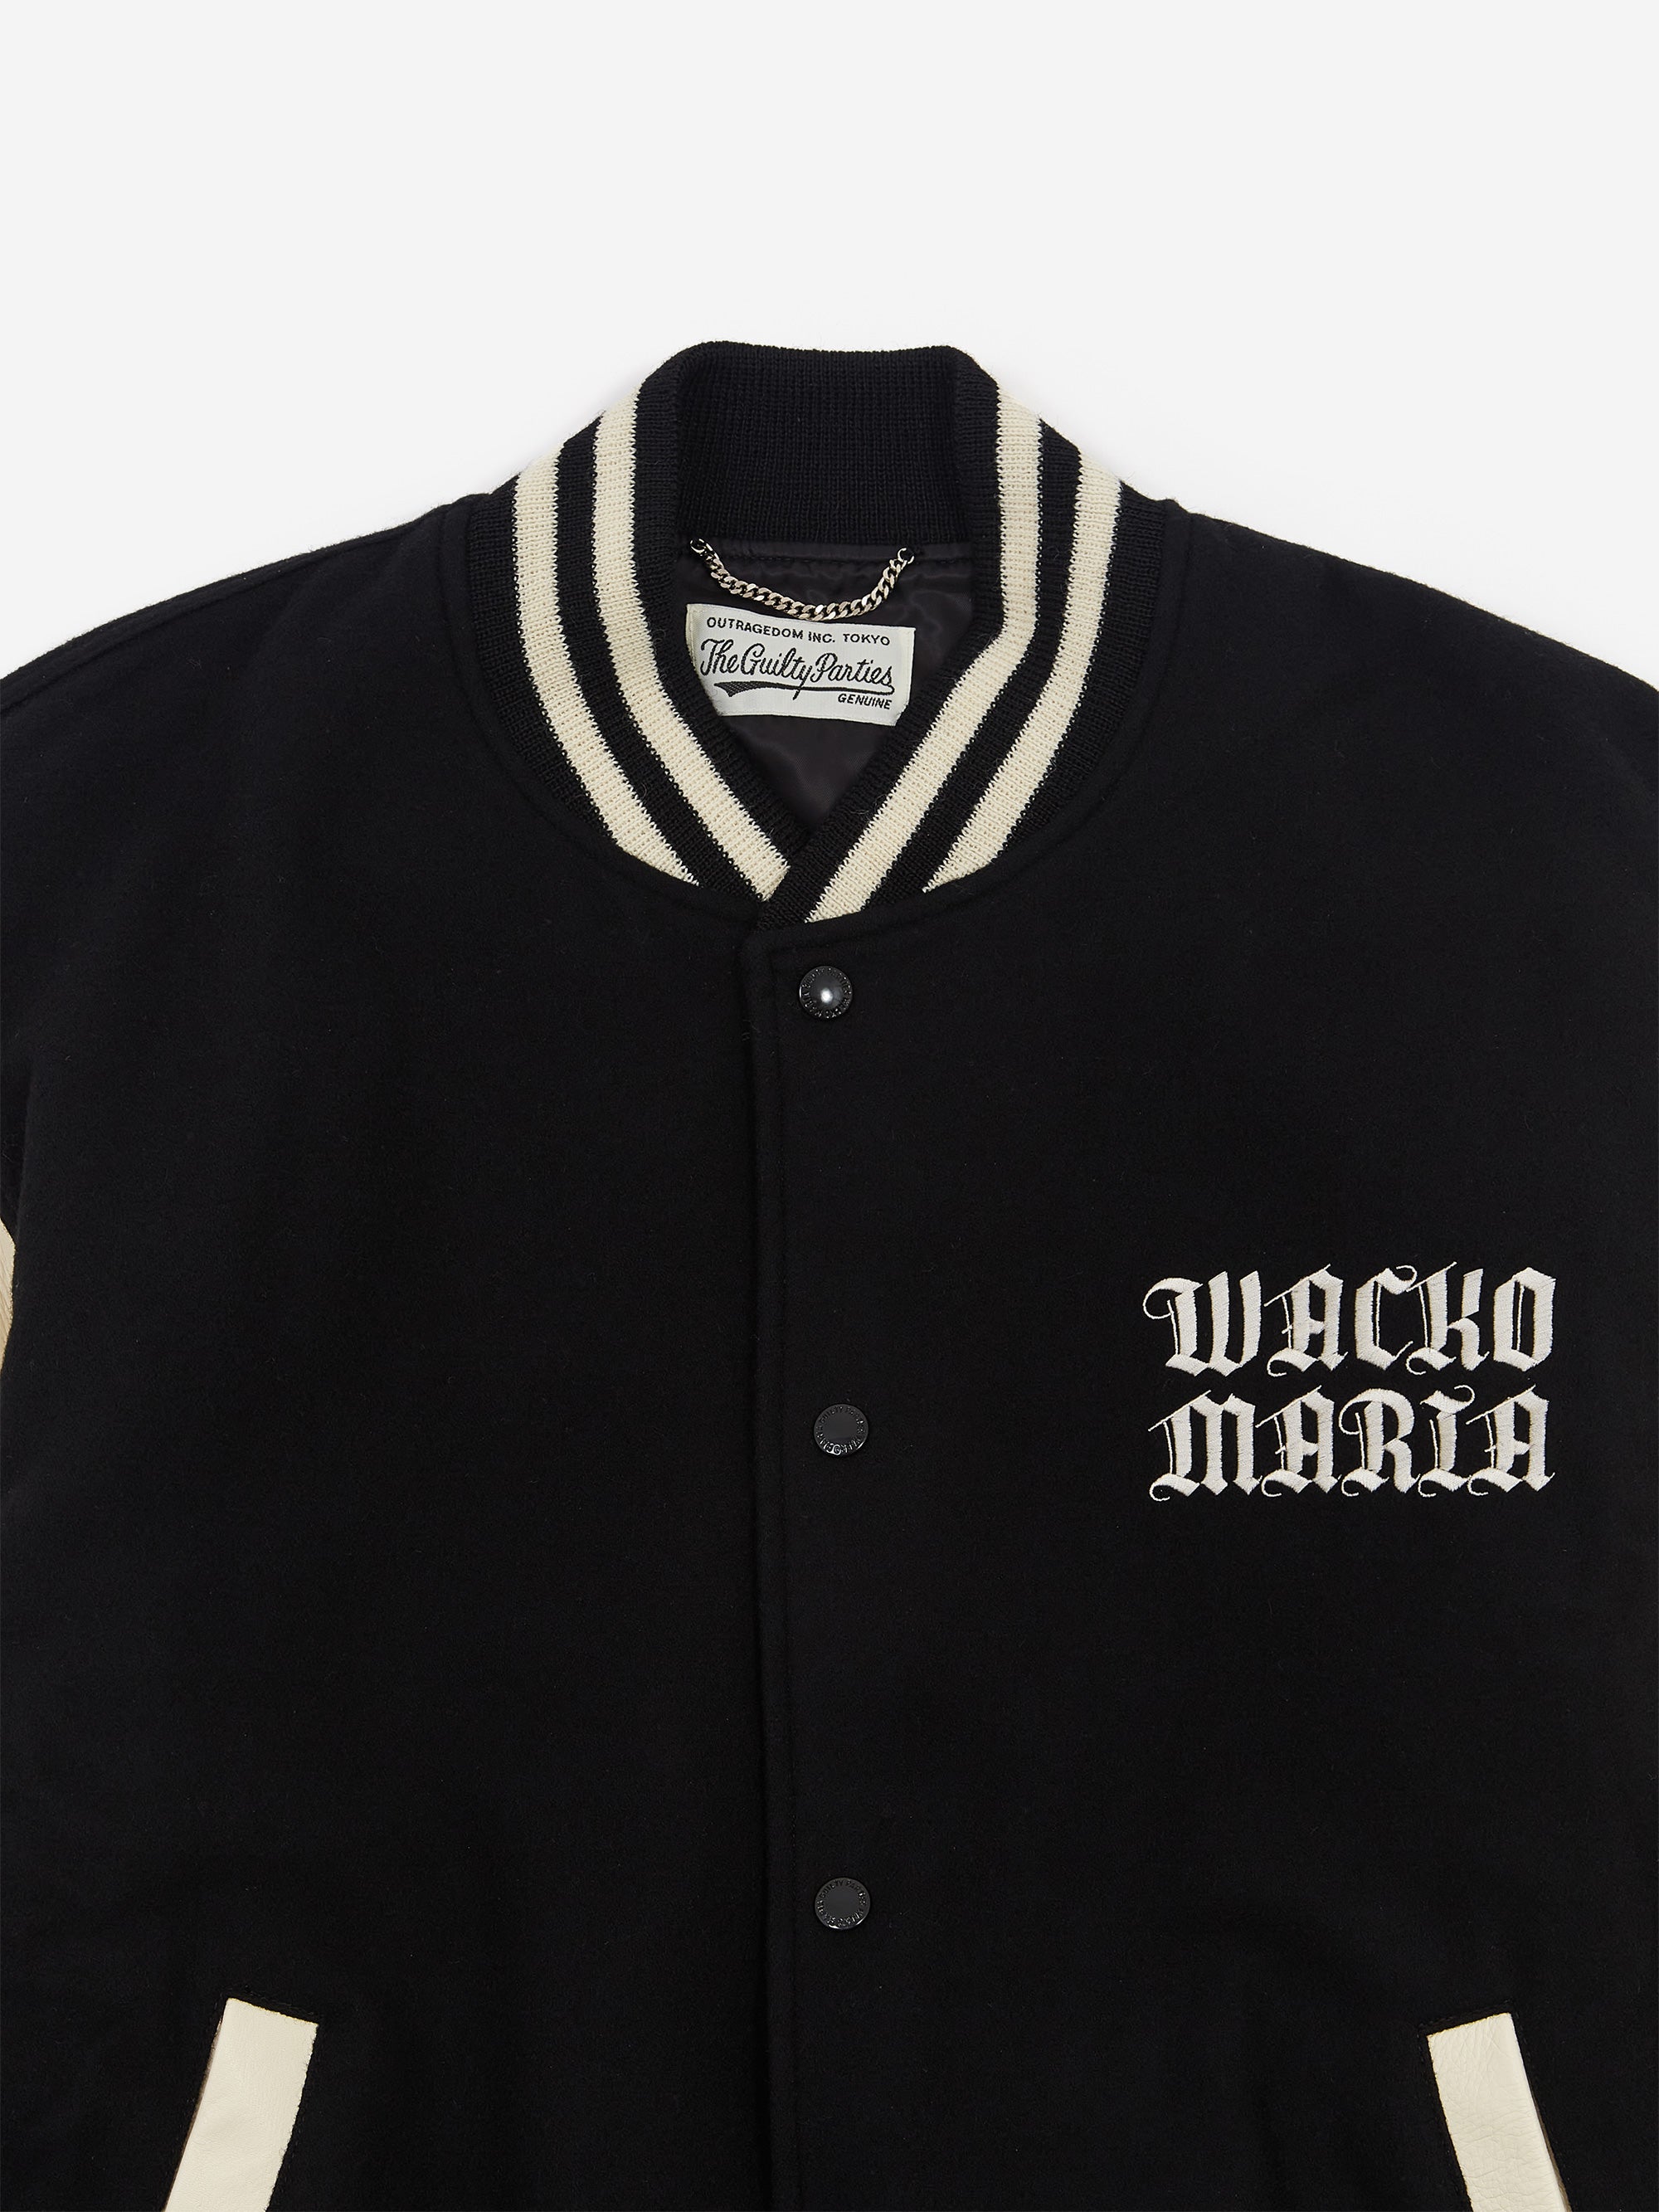 Wacko Maria Leather Varsity Jacket (Type-2) - Black